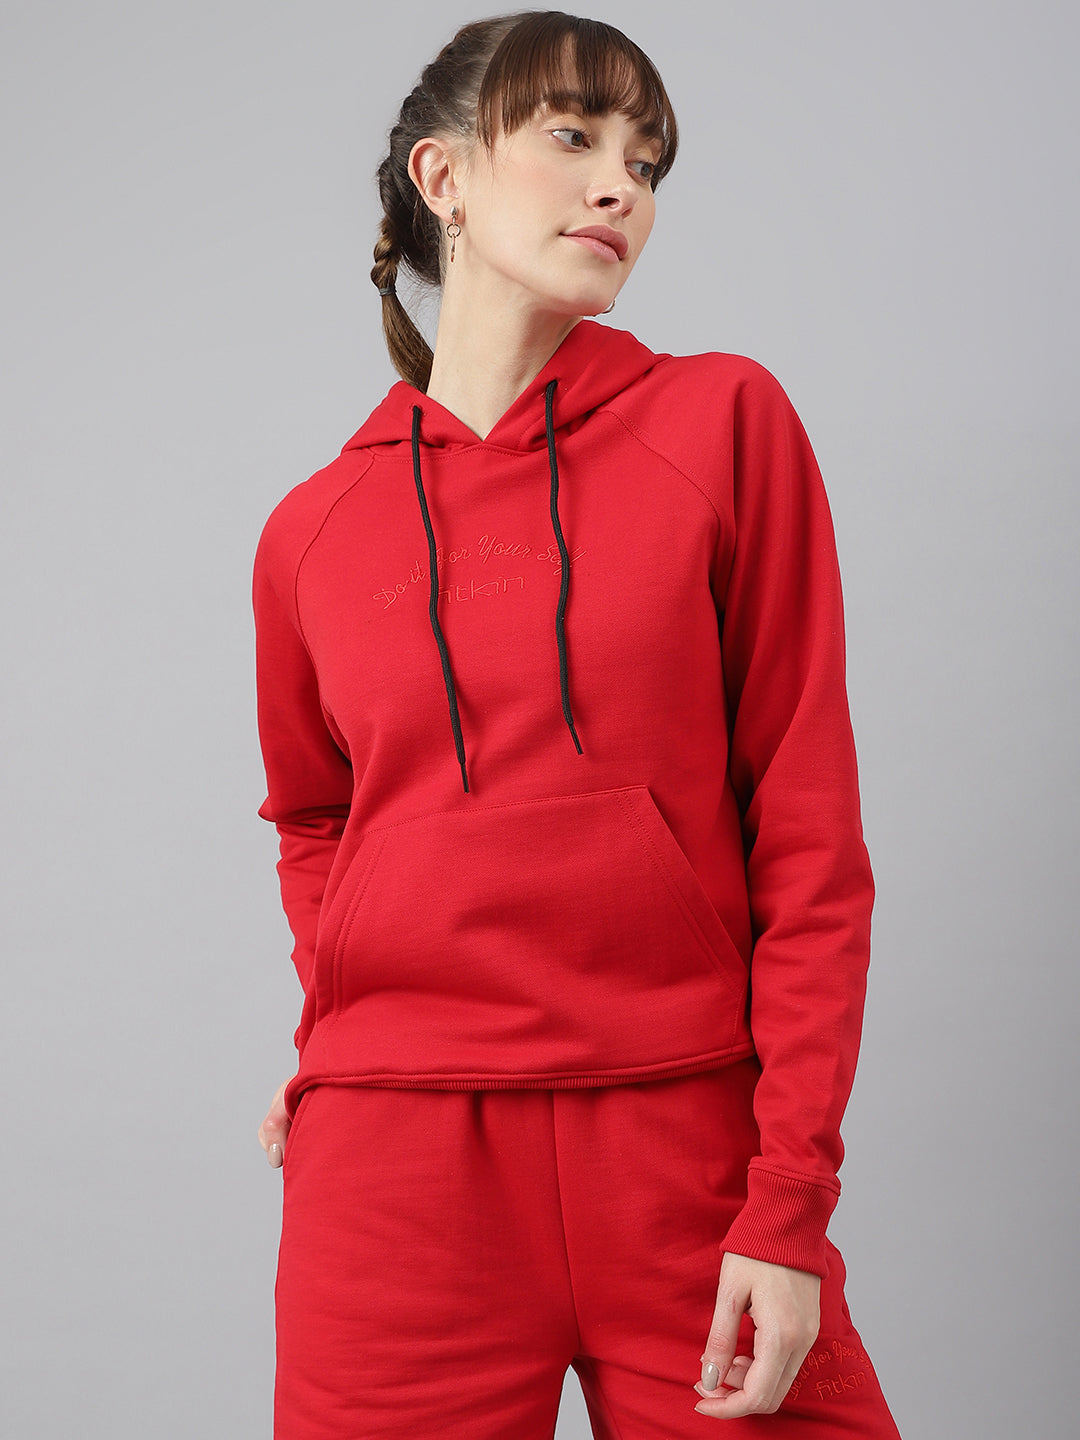 Fitkin Women Red Fleece Regular Fit Hooded Sweatshirt